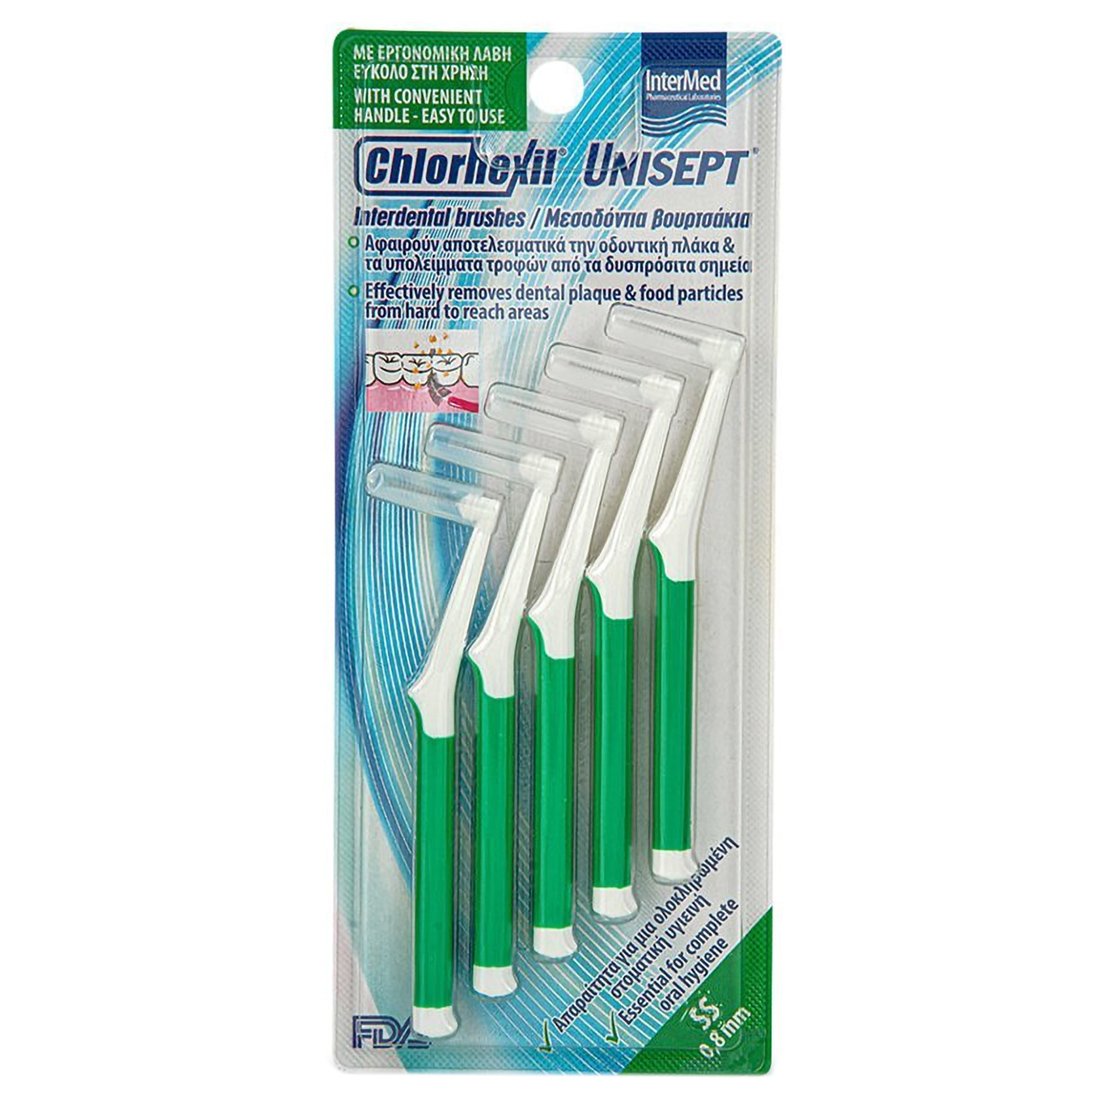 Chlorhexil Interdental Brushes Unisept SS 0,8mm Μεσοδόντια Βουρτσάκια για Ολοκληρωμένο Καθαρισμό Στοματικής Κοιλότητας 5 Τεμάχια